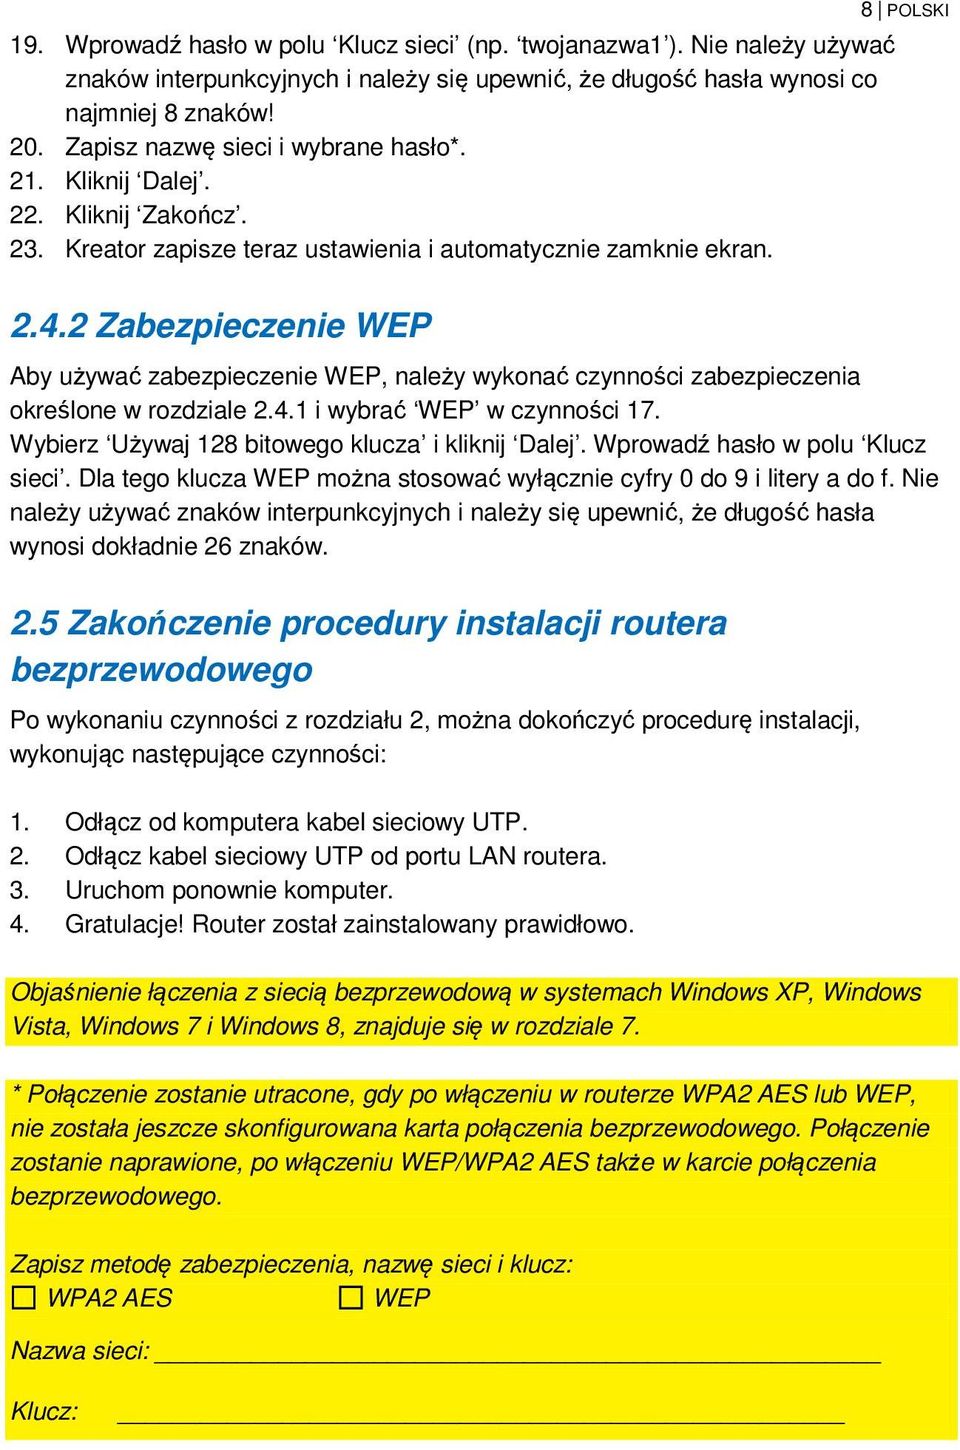 2 Zabezpieczenie WEP Aby używać zabezpieczenie WEP, należy wykonać czynności zabezpieczenia określone w rozdziale 2.4.1 i wybrać WEP w czynności 17. Wybierz Używaj 128 bitowego klucza i kliknij Dalej.